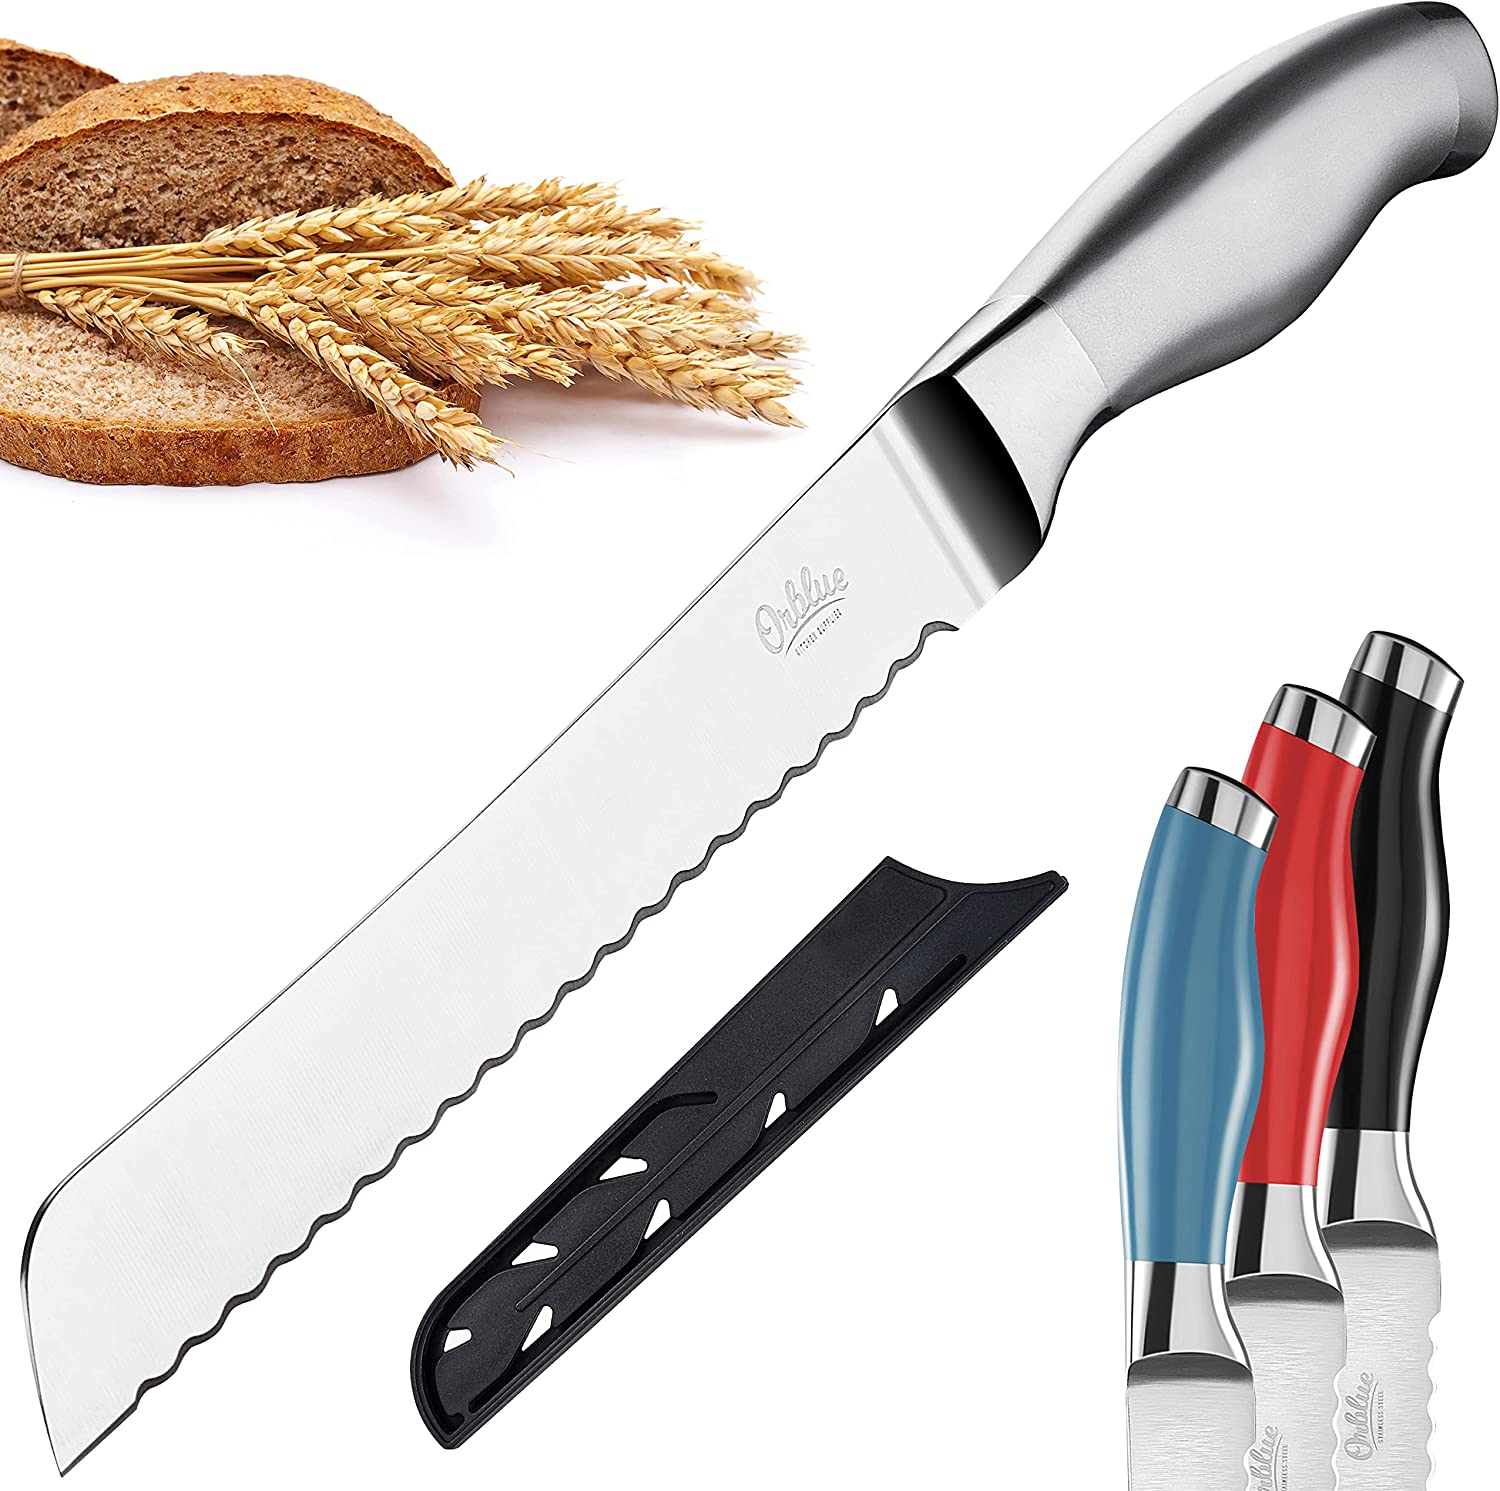 Orblue Ageless Silver Effortless Bread Knife, 13-Inch